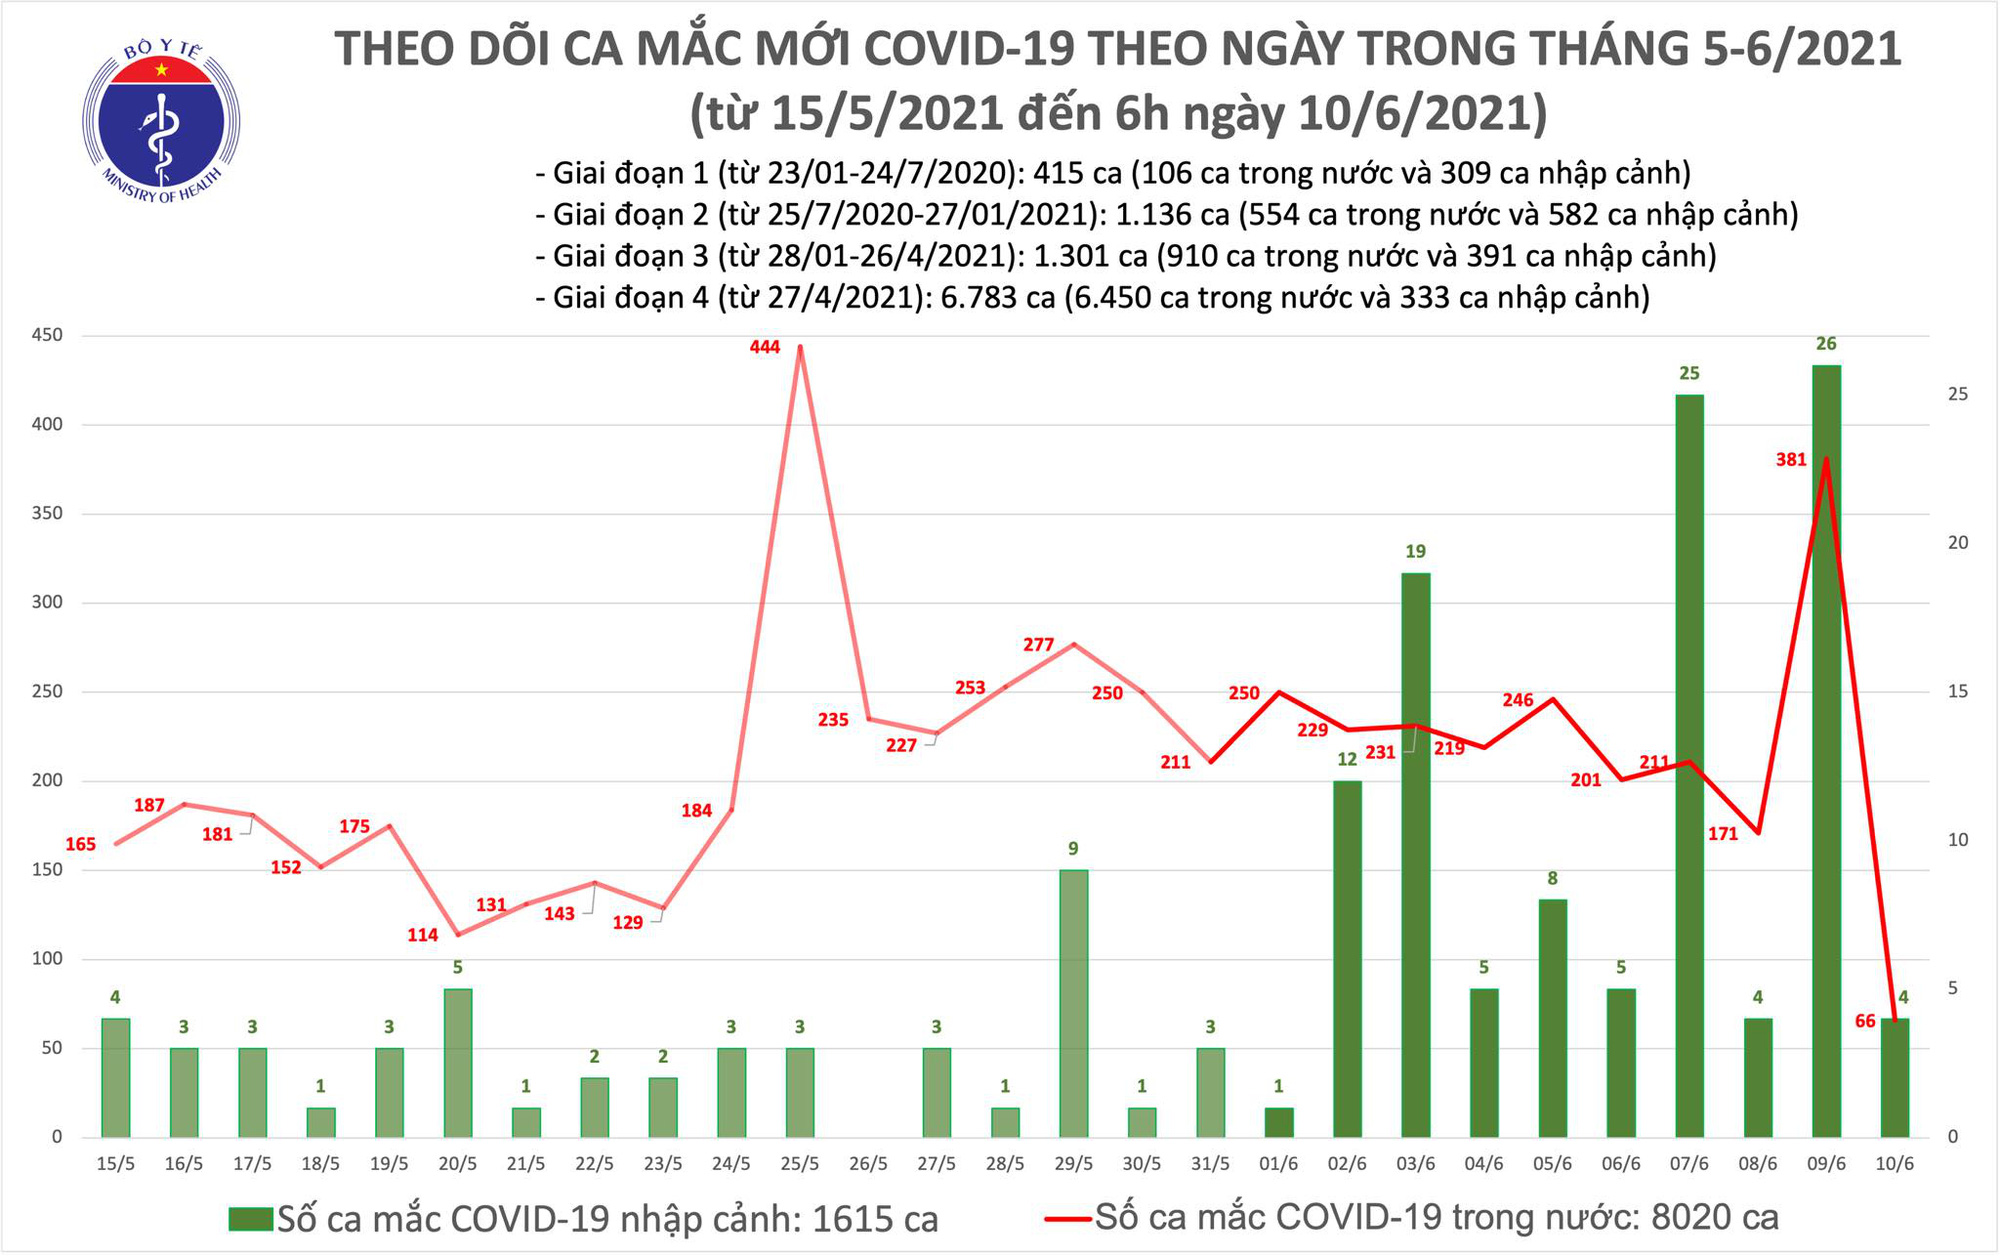 Sáng 10/6, có 70 ca Covid-19, TP Hồ Chí Minh tiếp tục có số ca mắc cao - Ảnh 1.